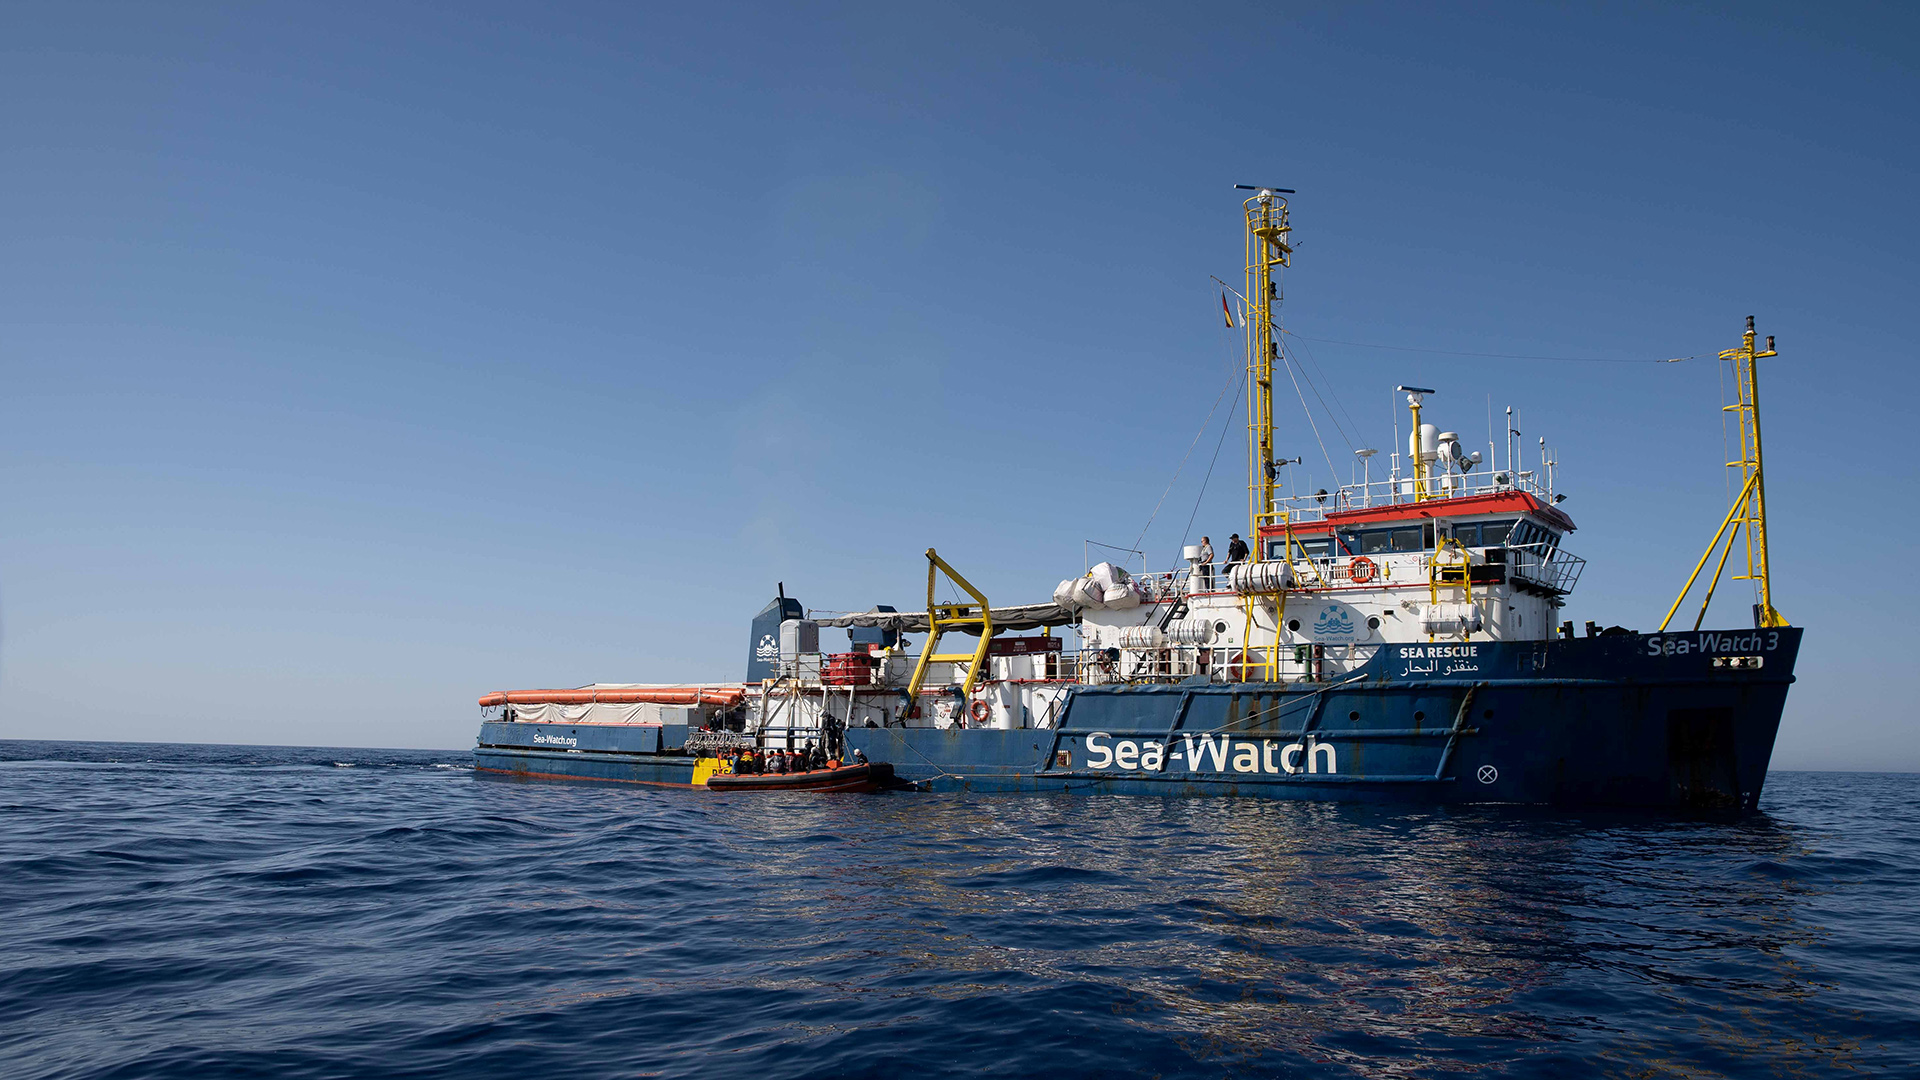 Mediterraneo: le organizzazioni umanitarie salvano centinaia